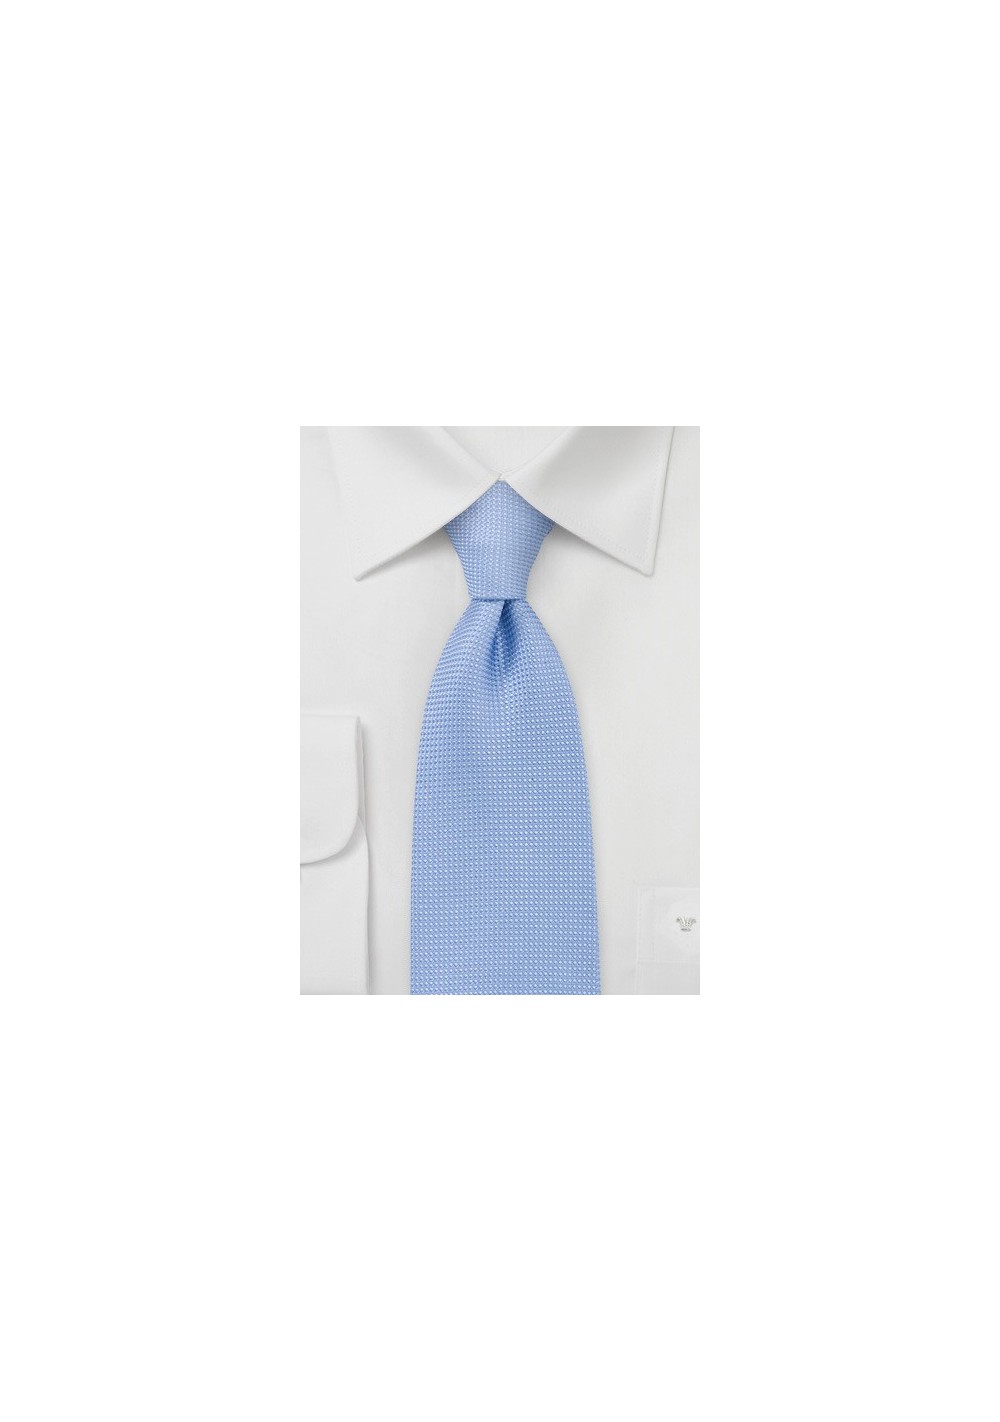 Textured Mist Blue Tie